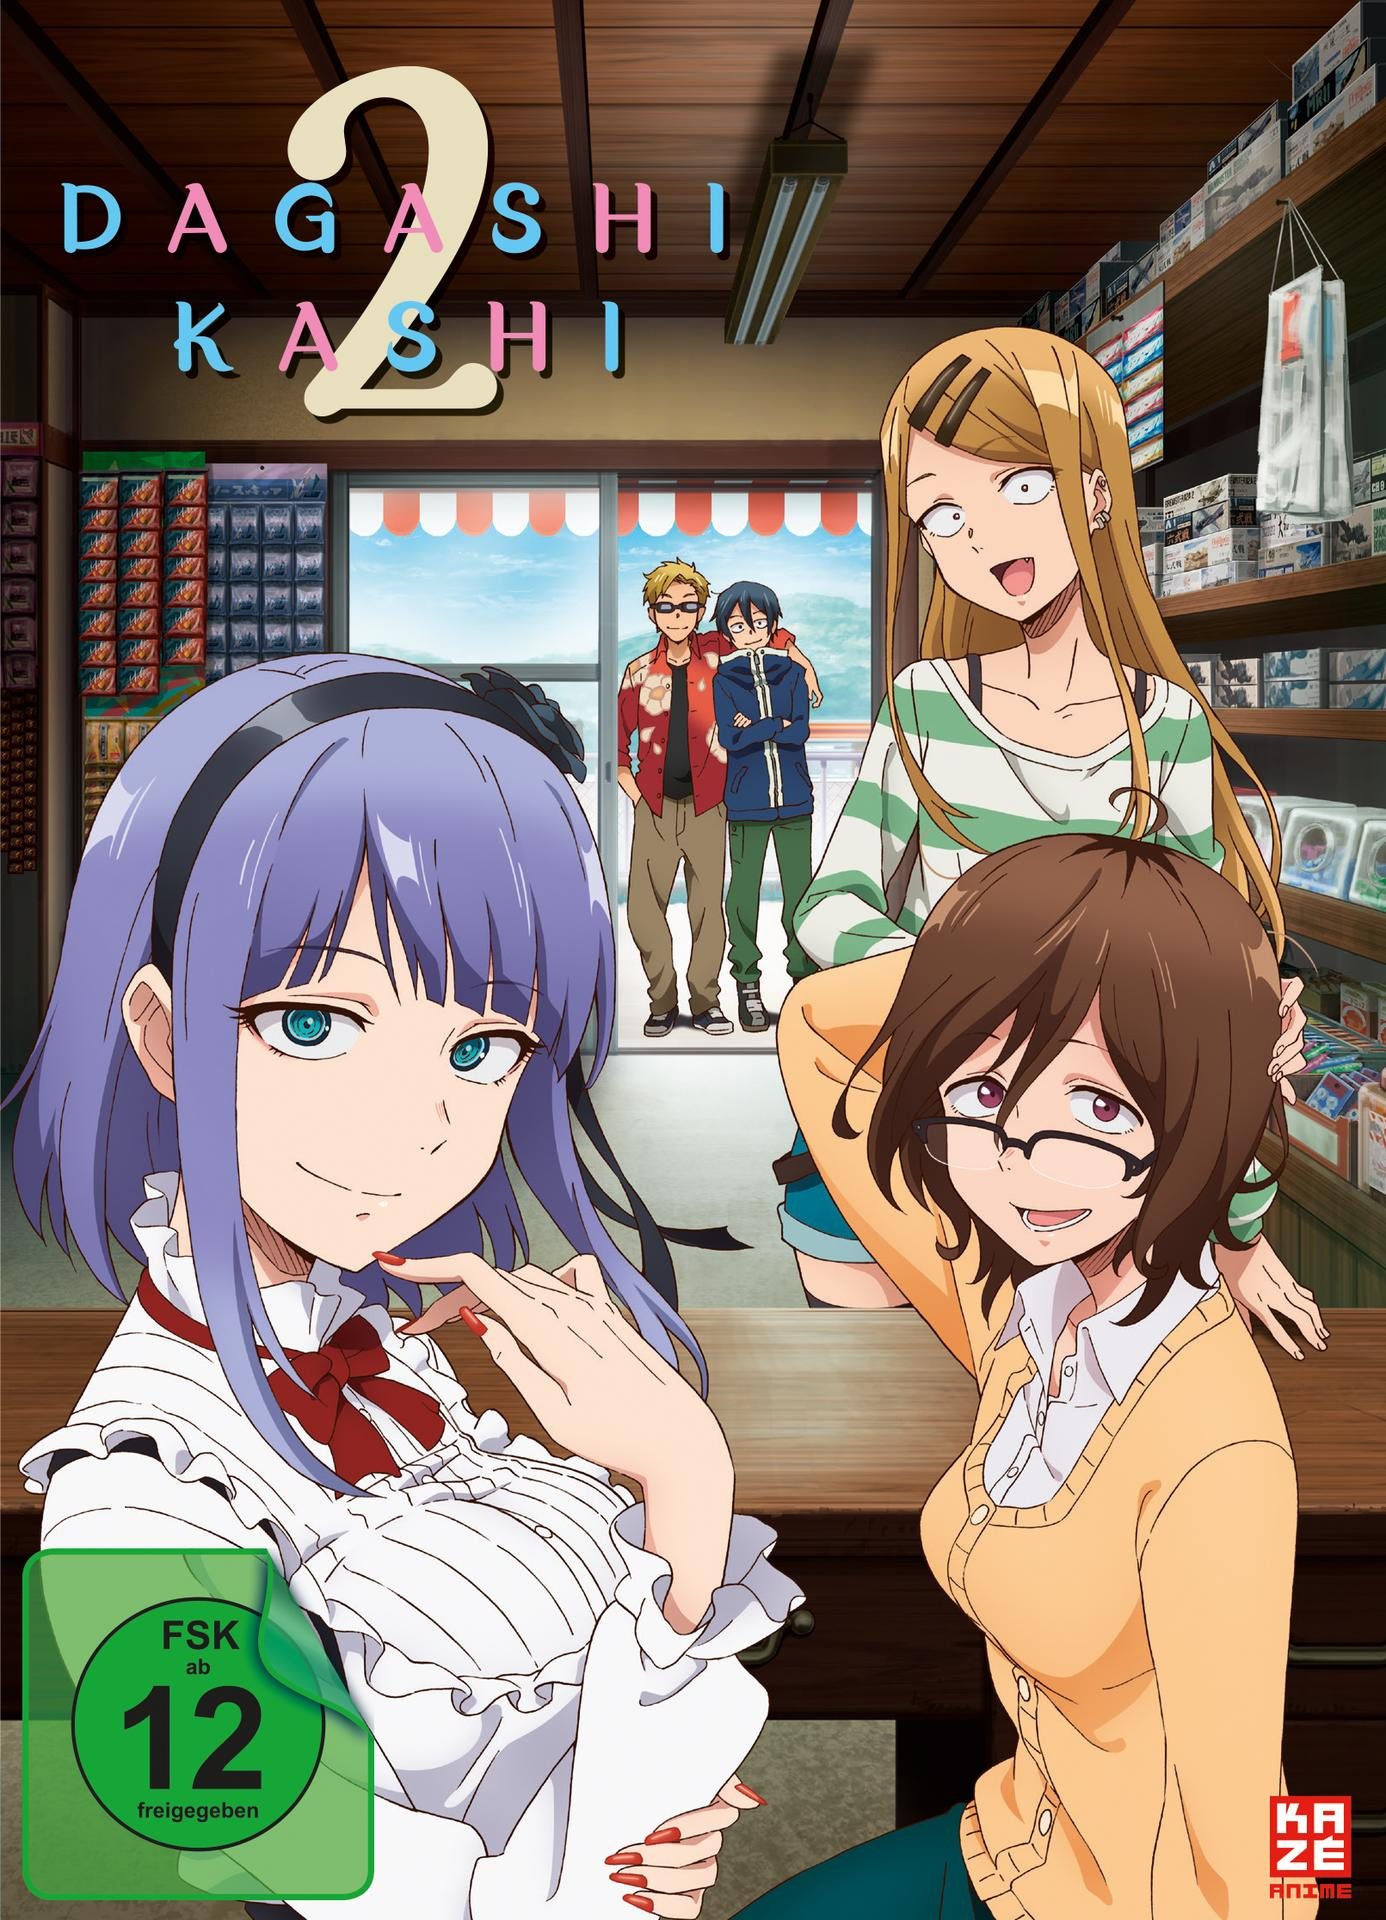 Dagashi Kashi Staffel 2. - DVD